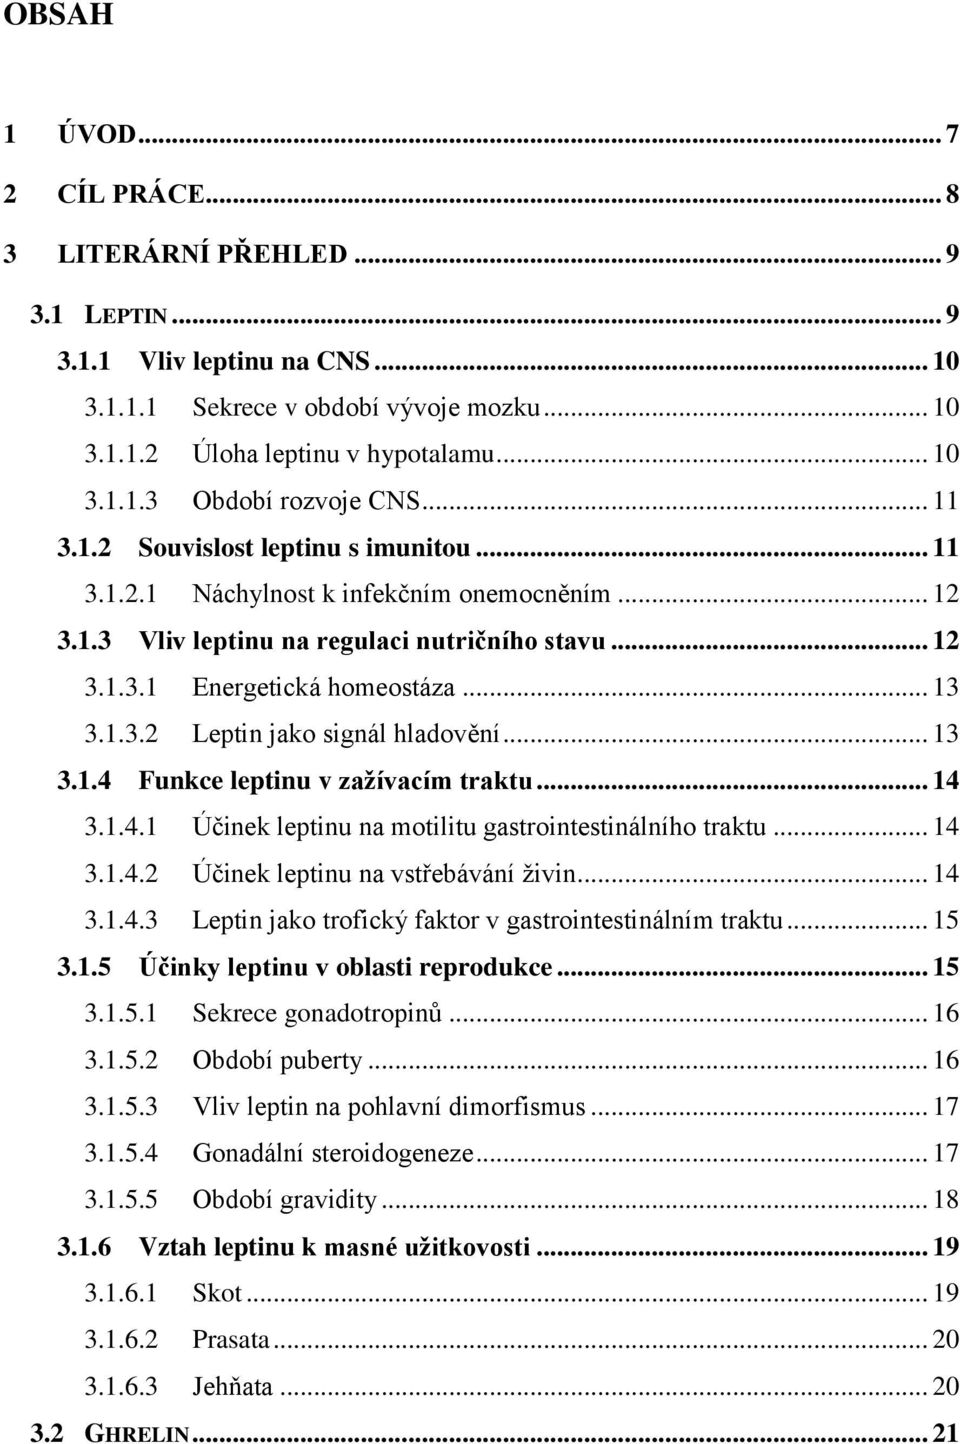 .. 13 3.1.4 Funkce leptinu v zažívacím traktu... 14 3.1.4.1 Účinek leptinu na motilitu gastrointestinálního traktu... 14 3.1.4.2 Účinek leptinu na vstřebávání živin... 14 3.1.4.3 Leptin jako trofický faktor v gastrointestinálním traktu.